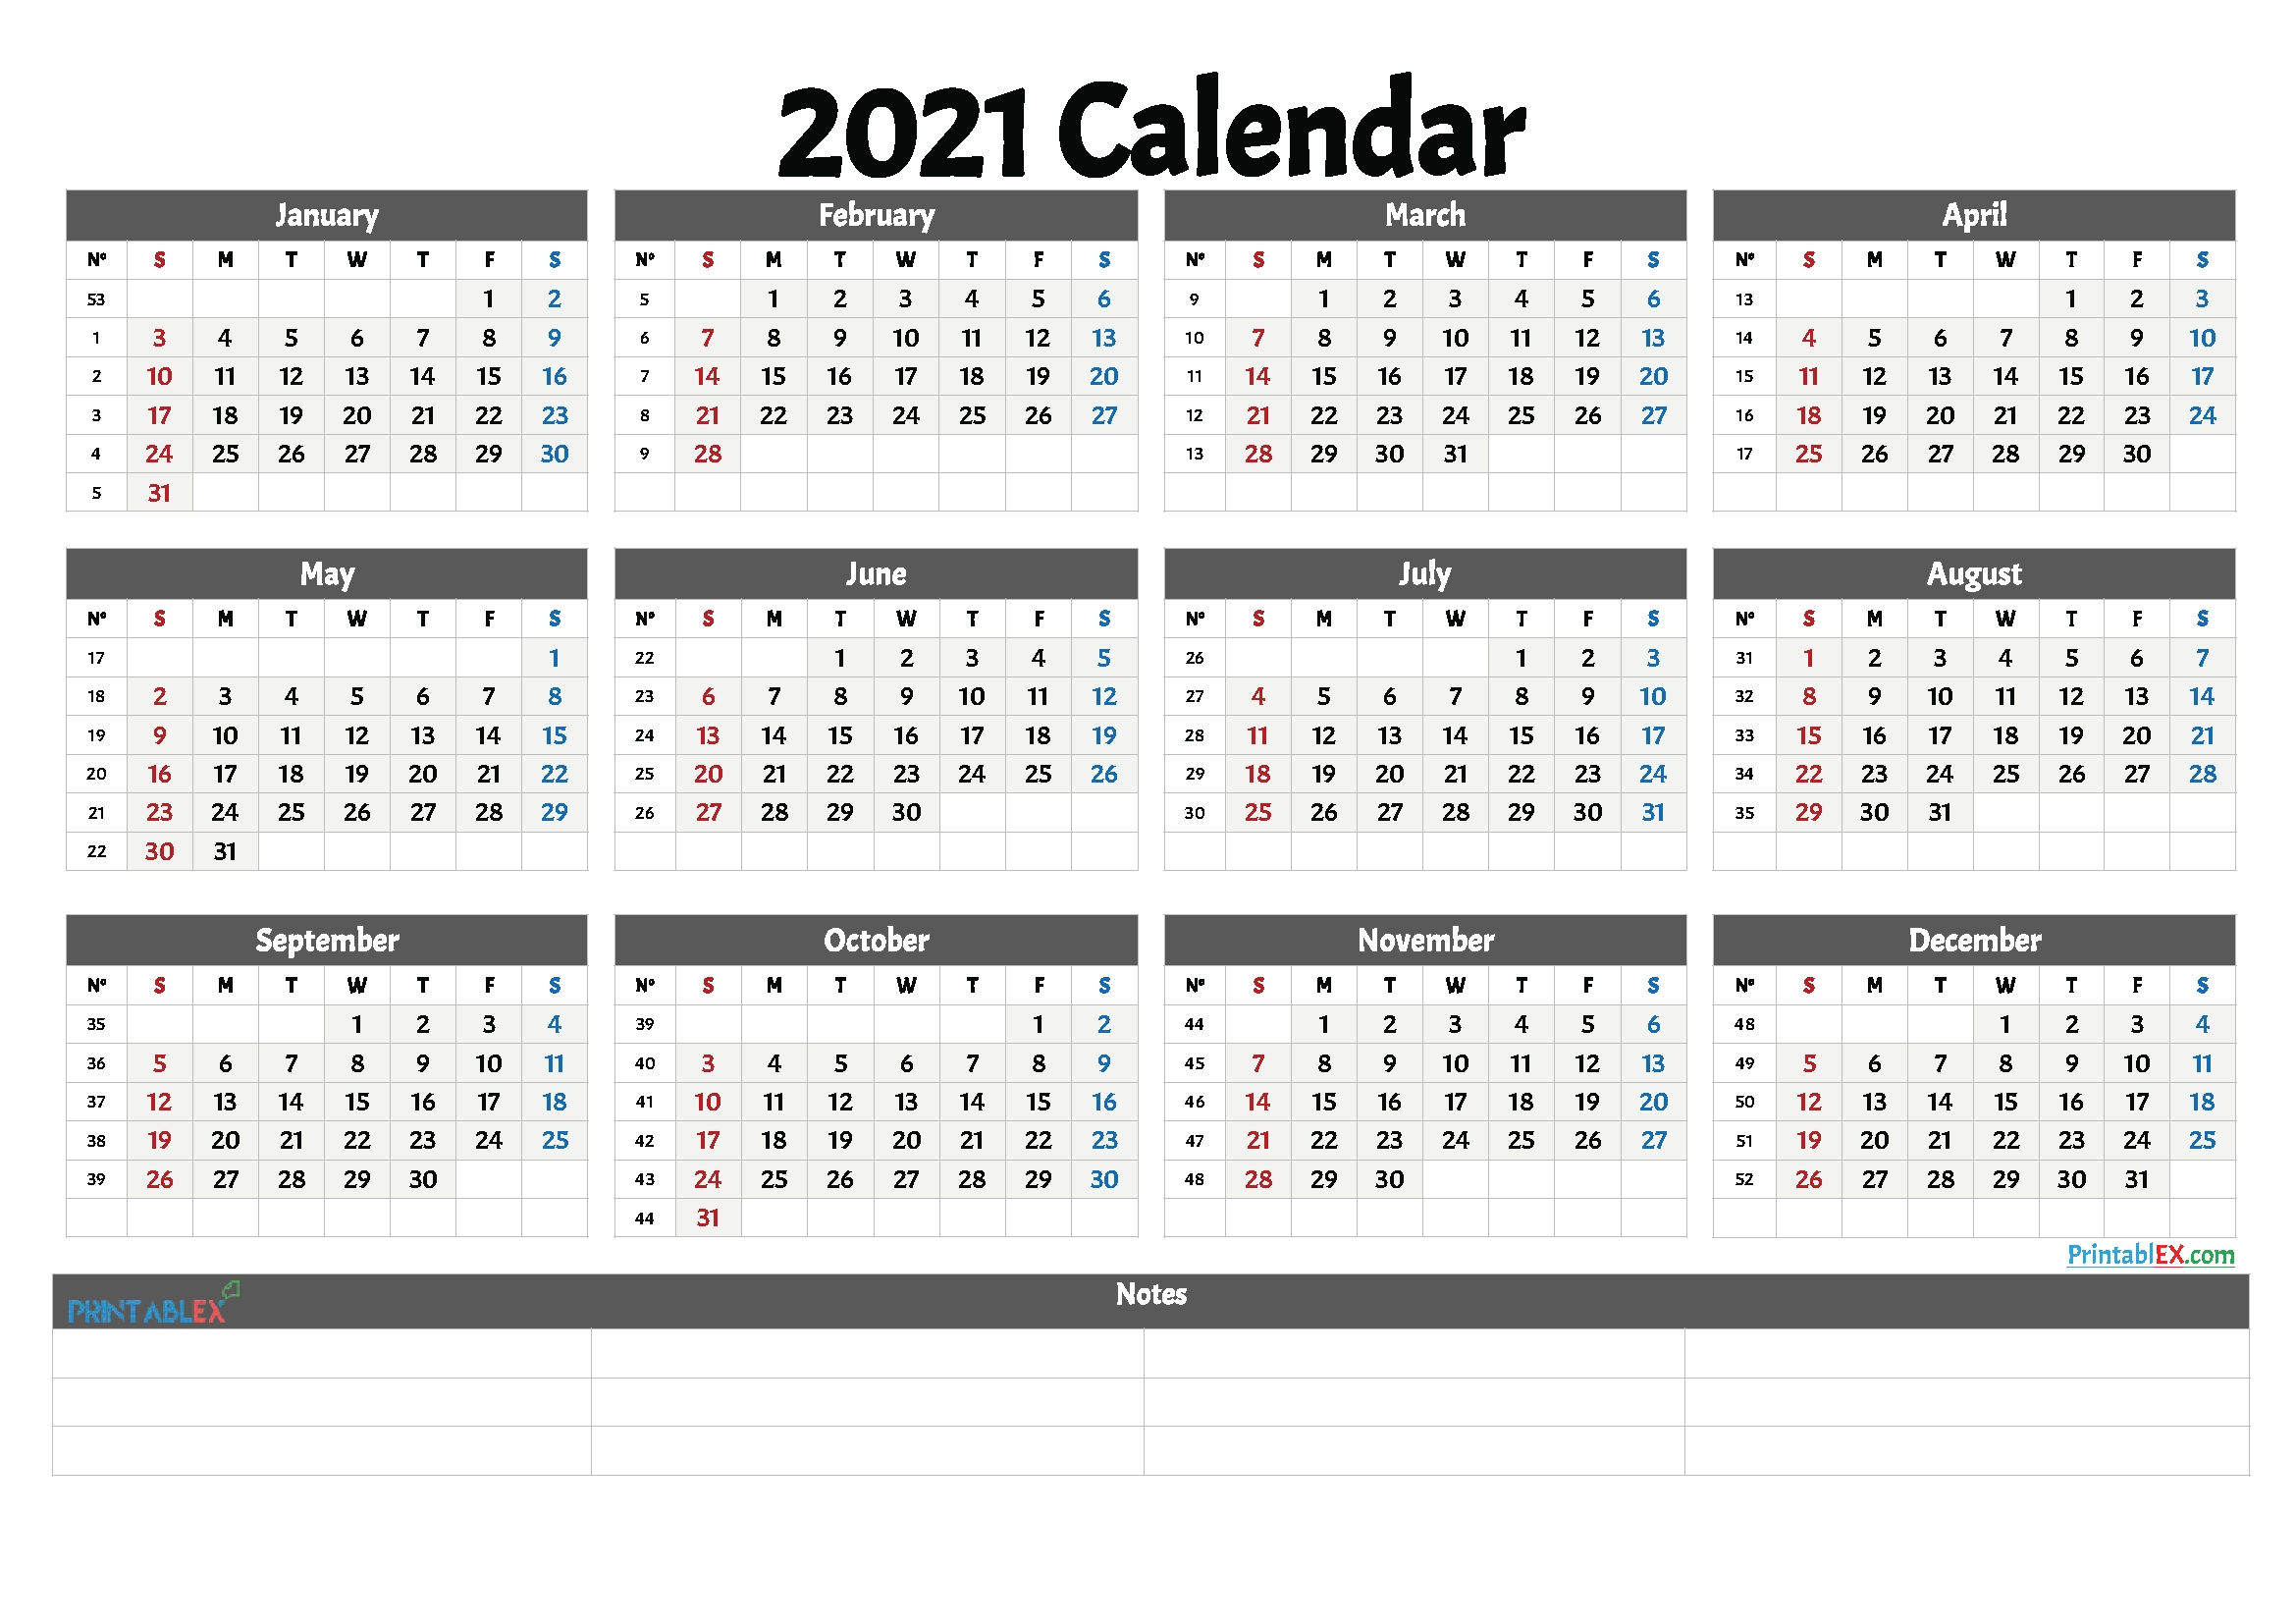 Take 2021 Calendar By Week